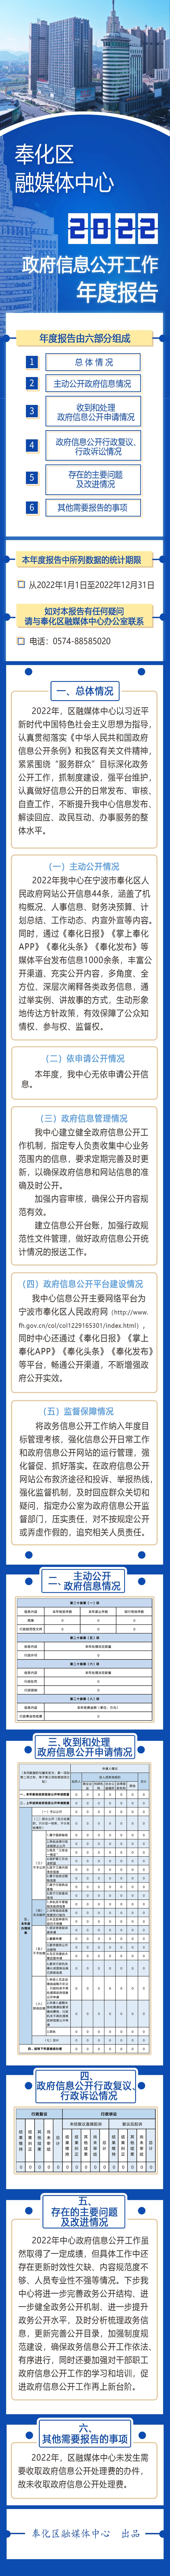 宁波市奉化区融媒体中心2022年政府信息公开工作年度报告图解.jpg